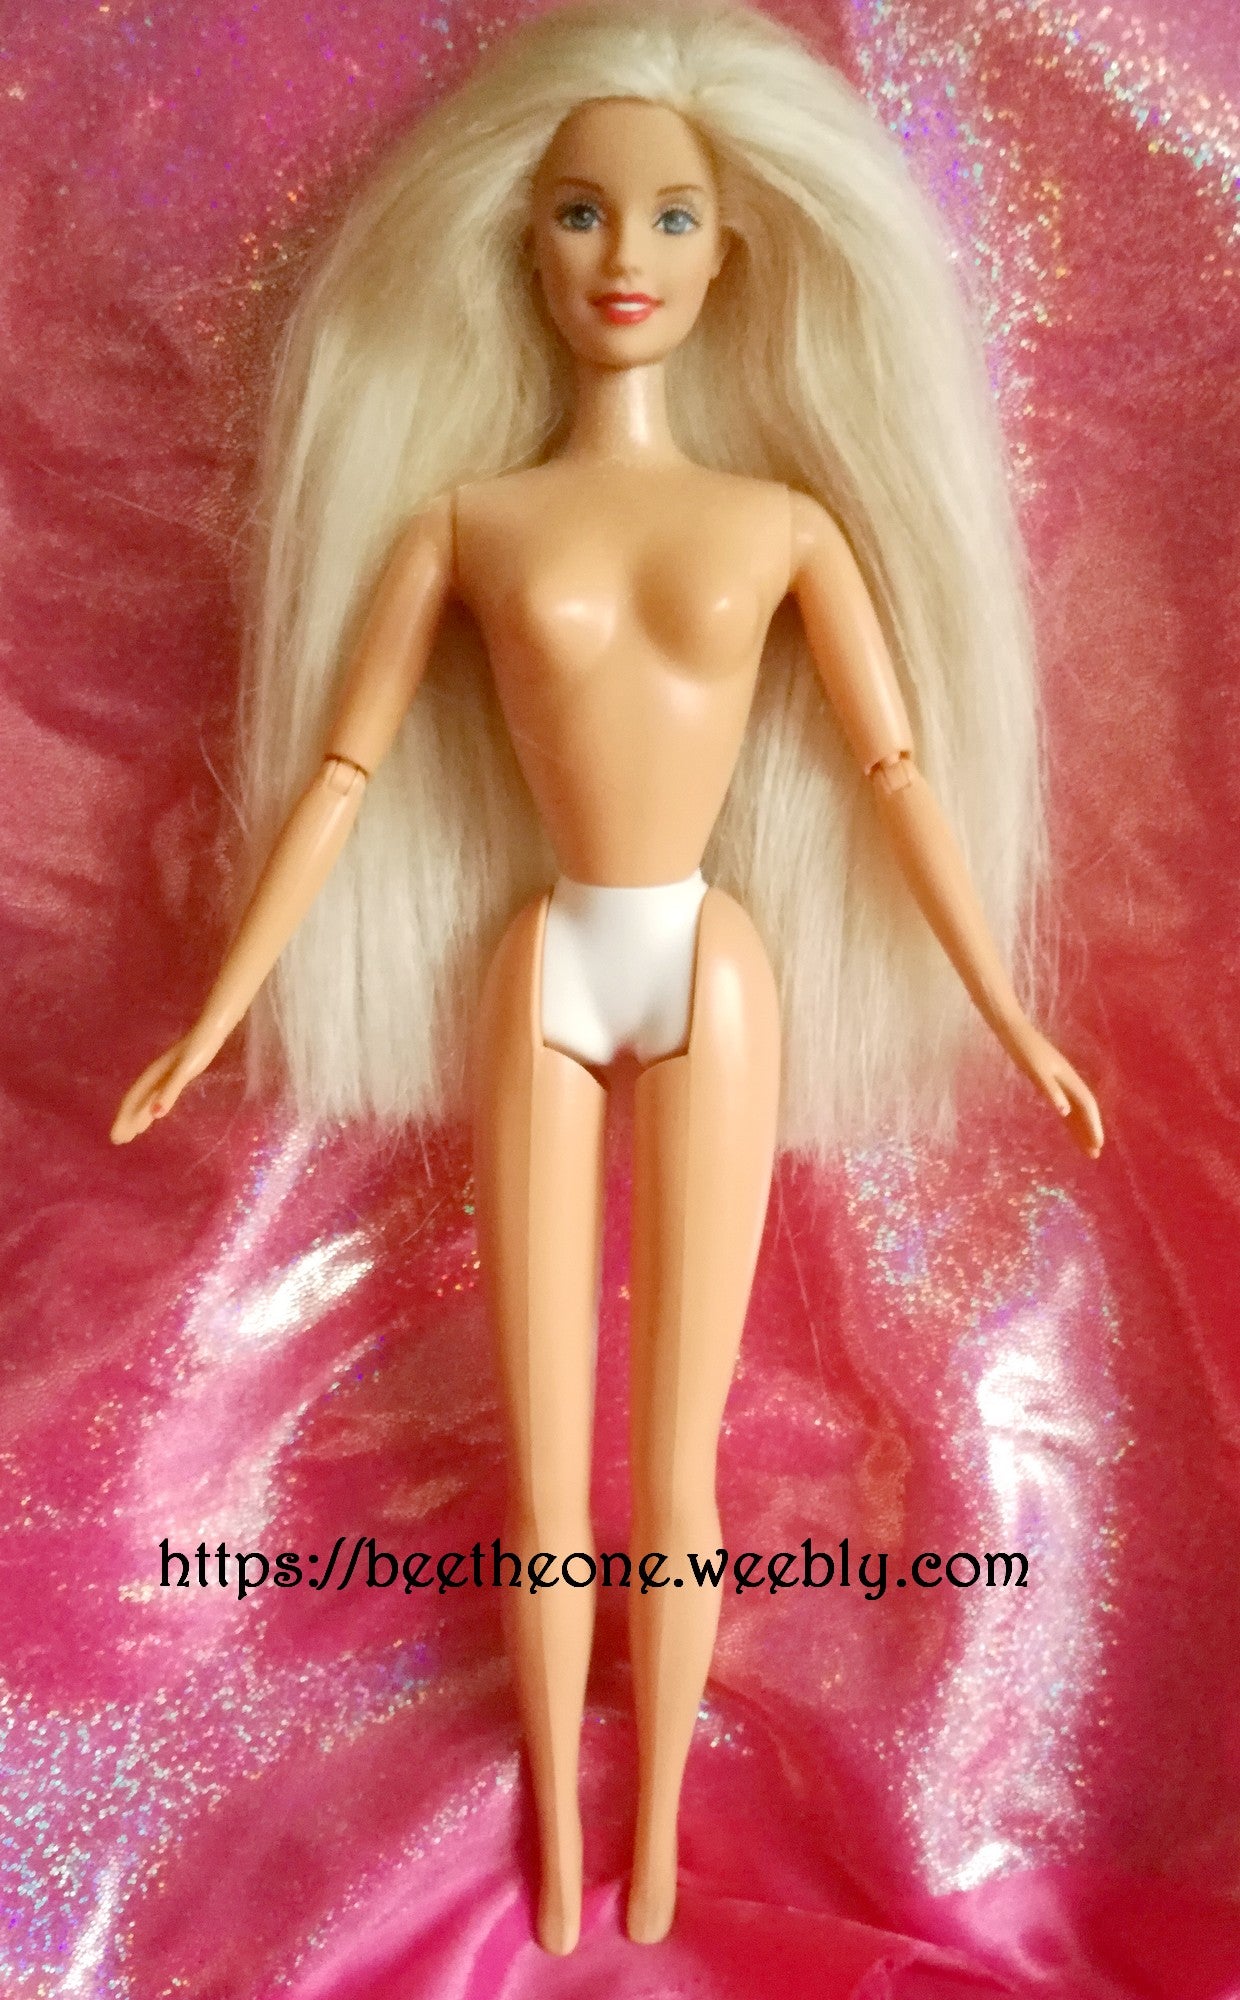 Barbie Generation Girl Dance Party - Mattel 1999 - Poupée nue